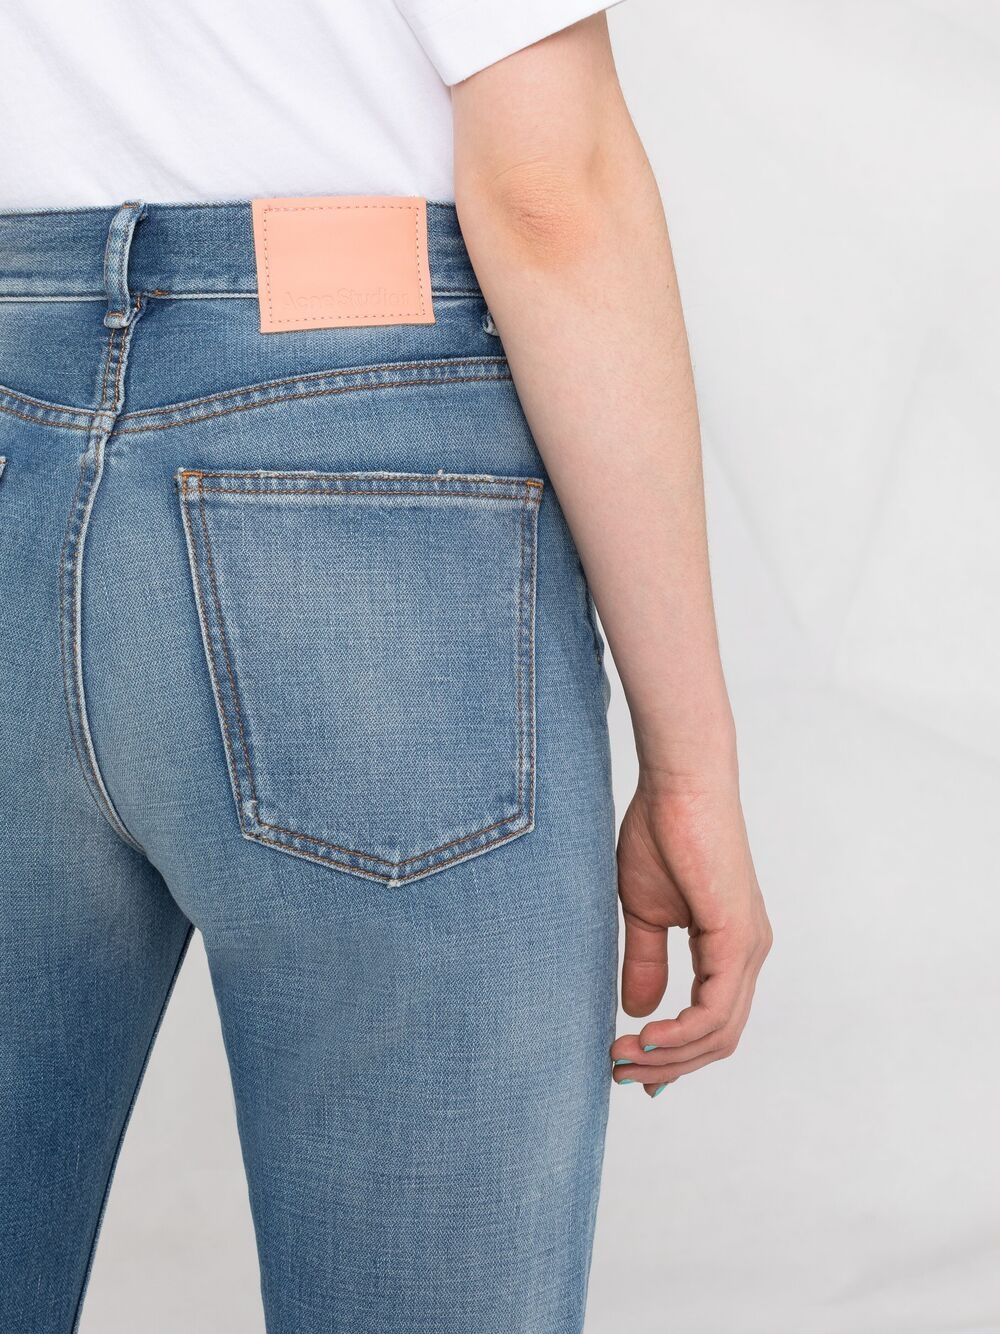 фото Acne studios прямые джинсы с эффектом потертости